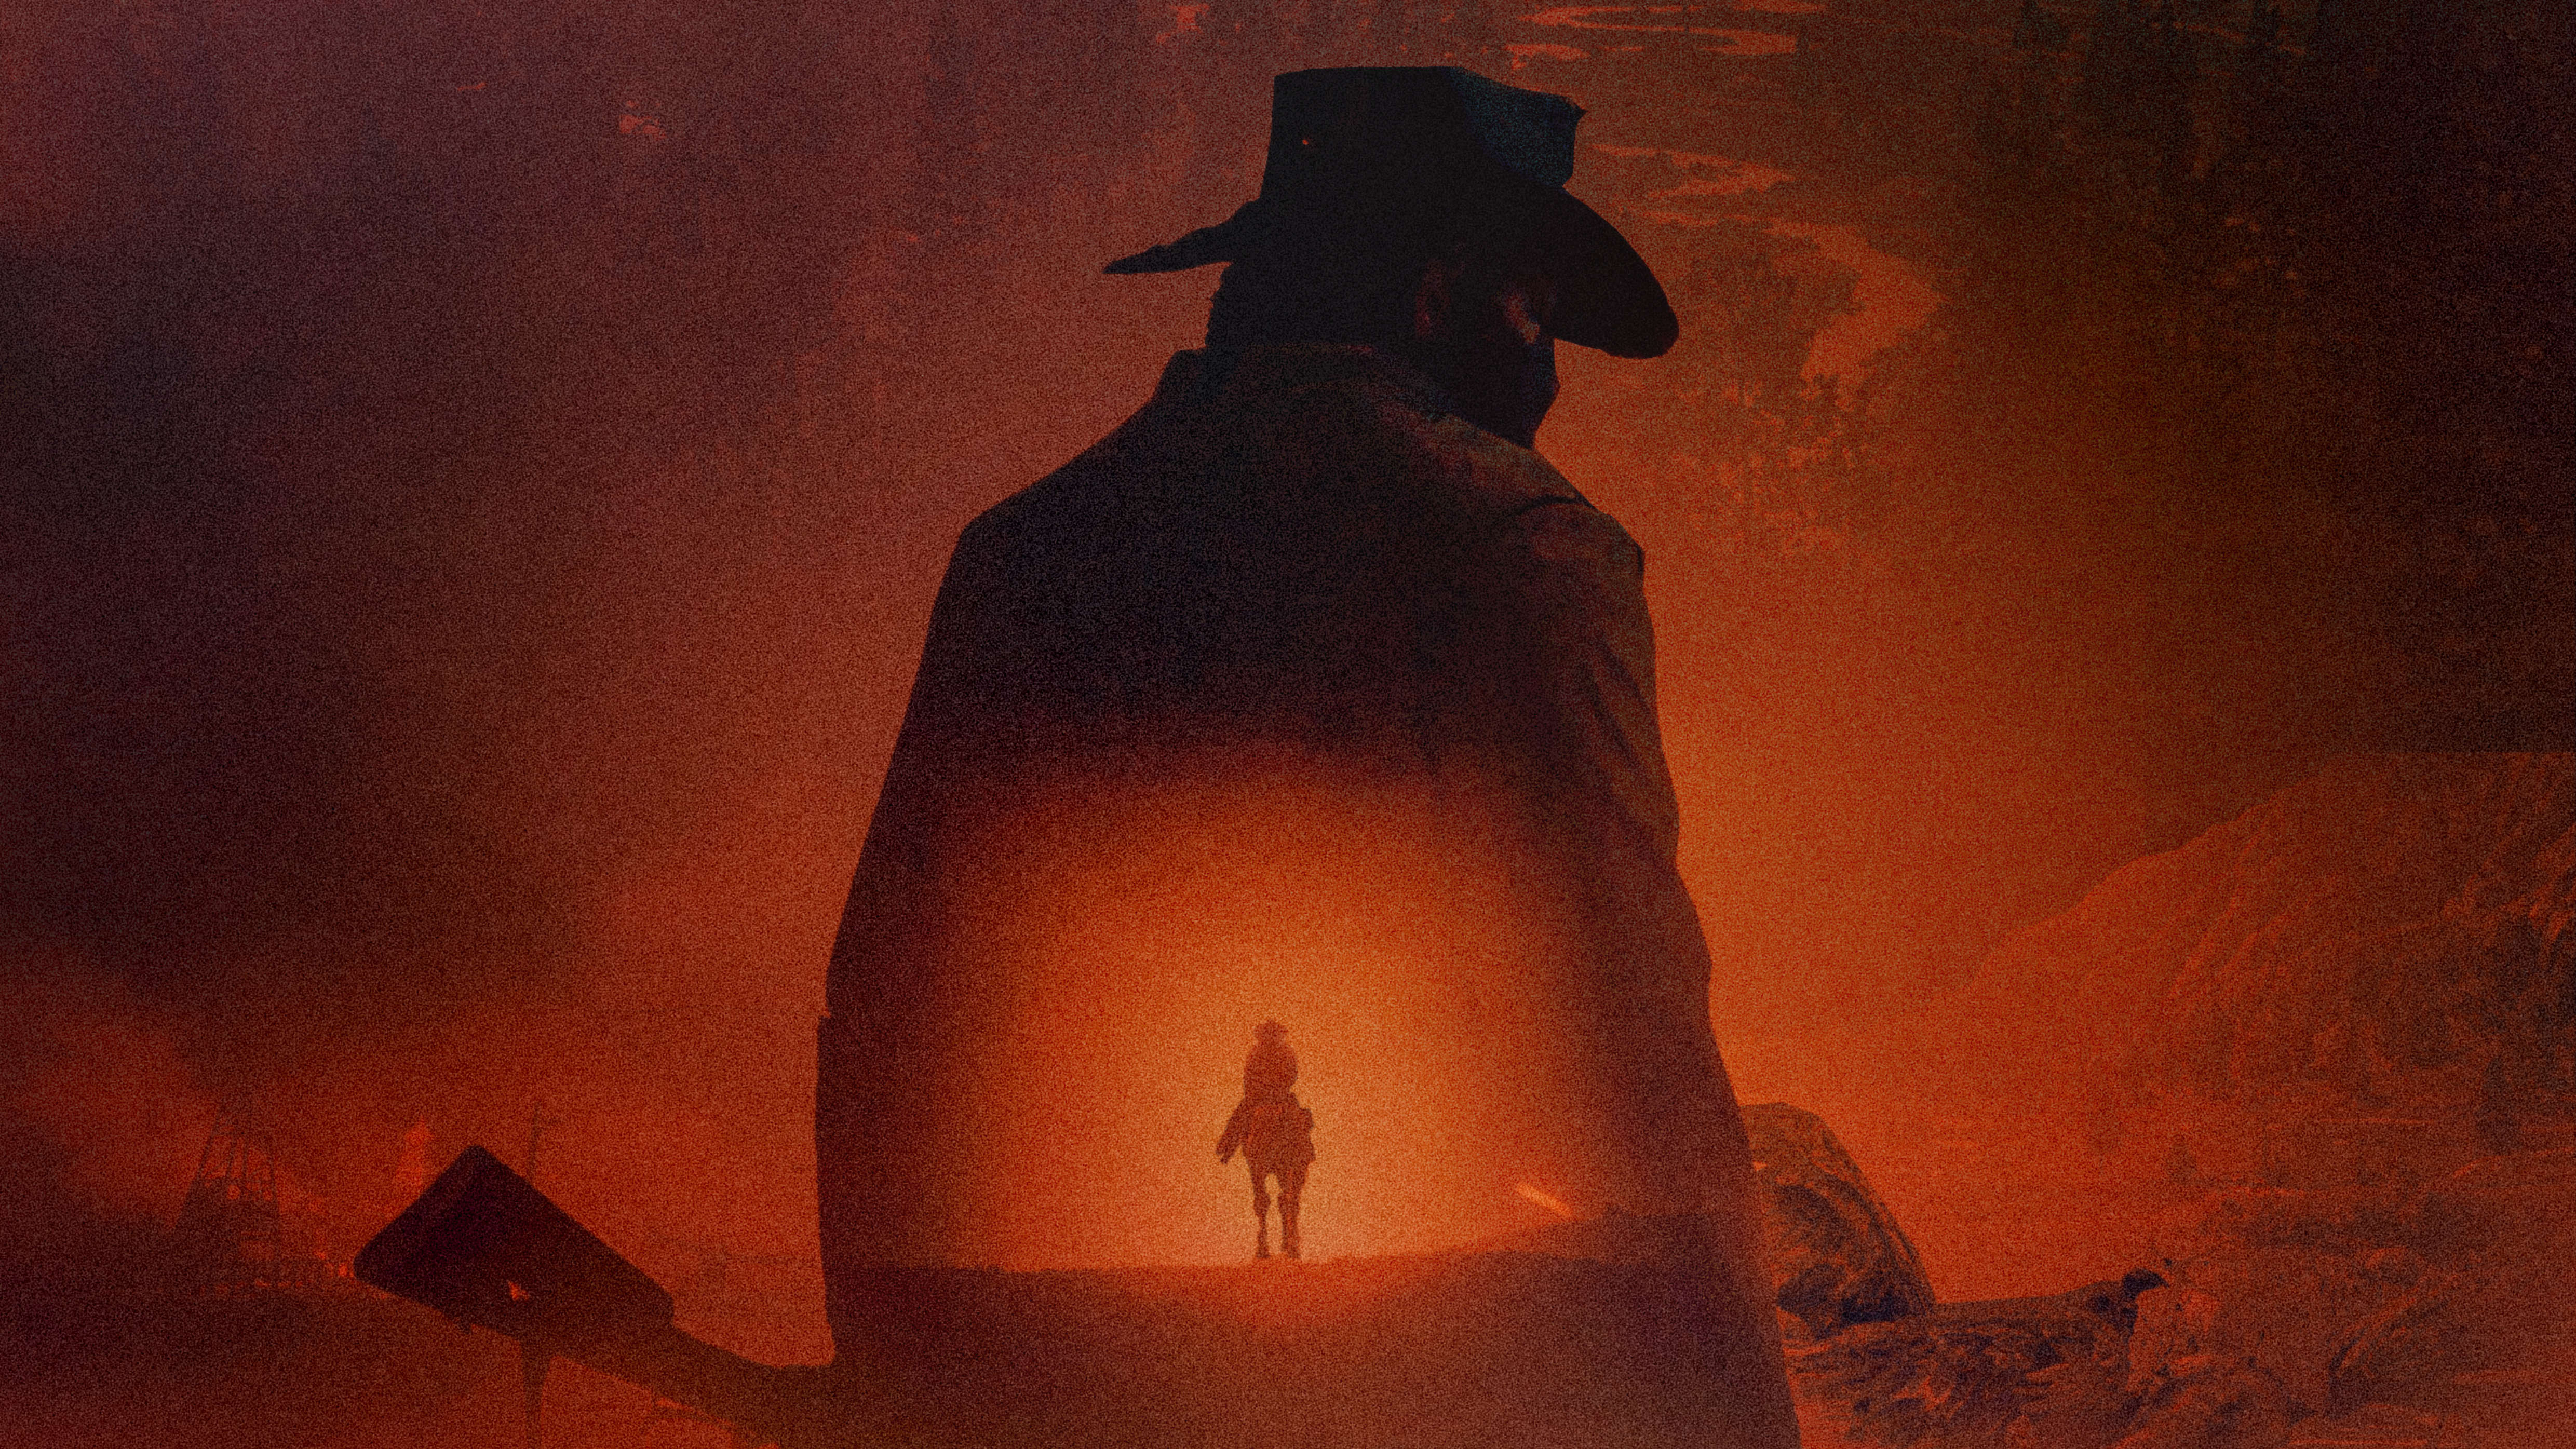 Wallpaper Gallery: Red Dead Redemption 2 e il Selvaggio West